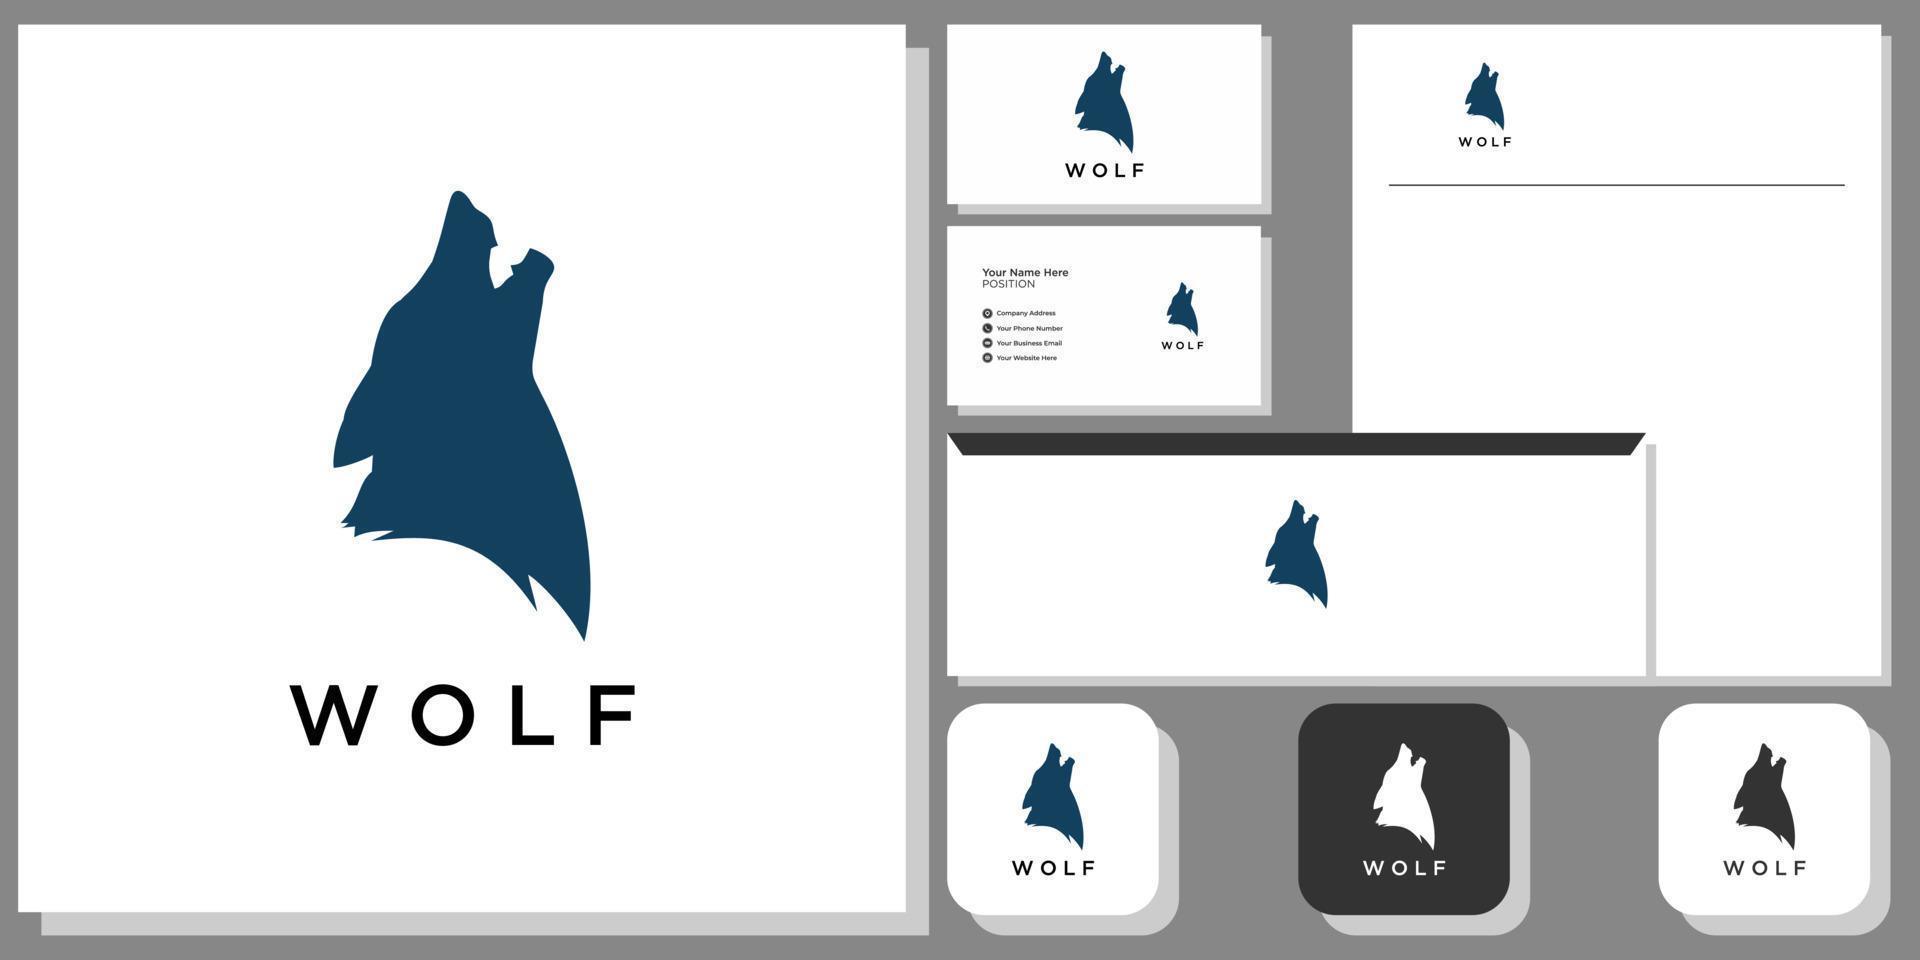 lupo fauna selvatica predatore canino foresta di montagna con modello di identità del marchio vettore